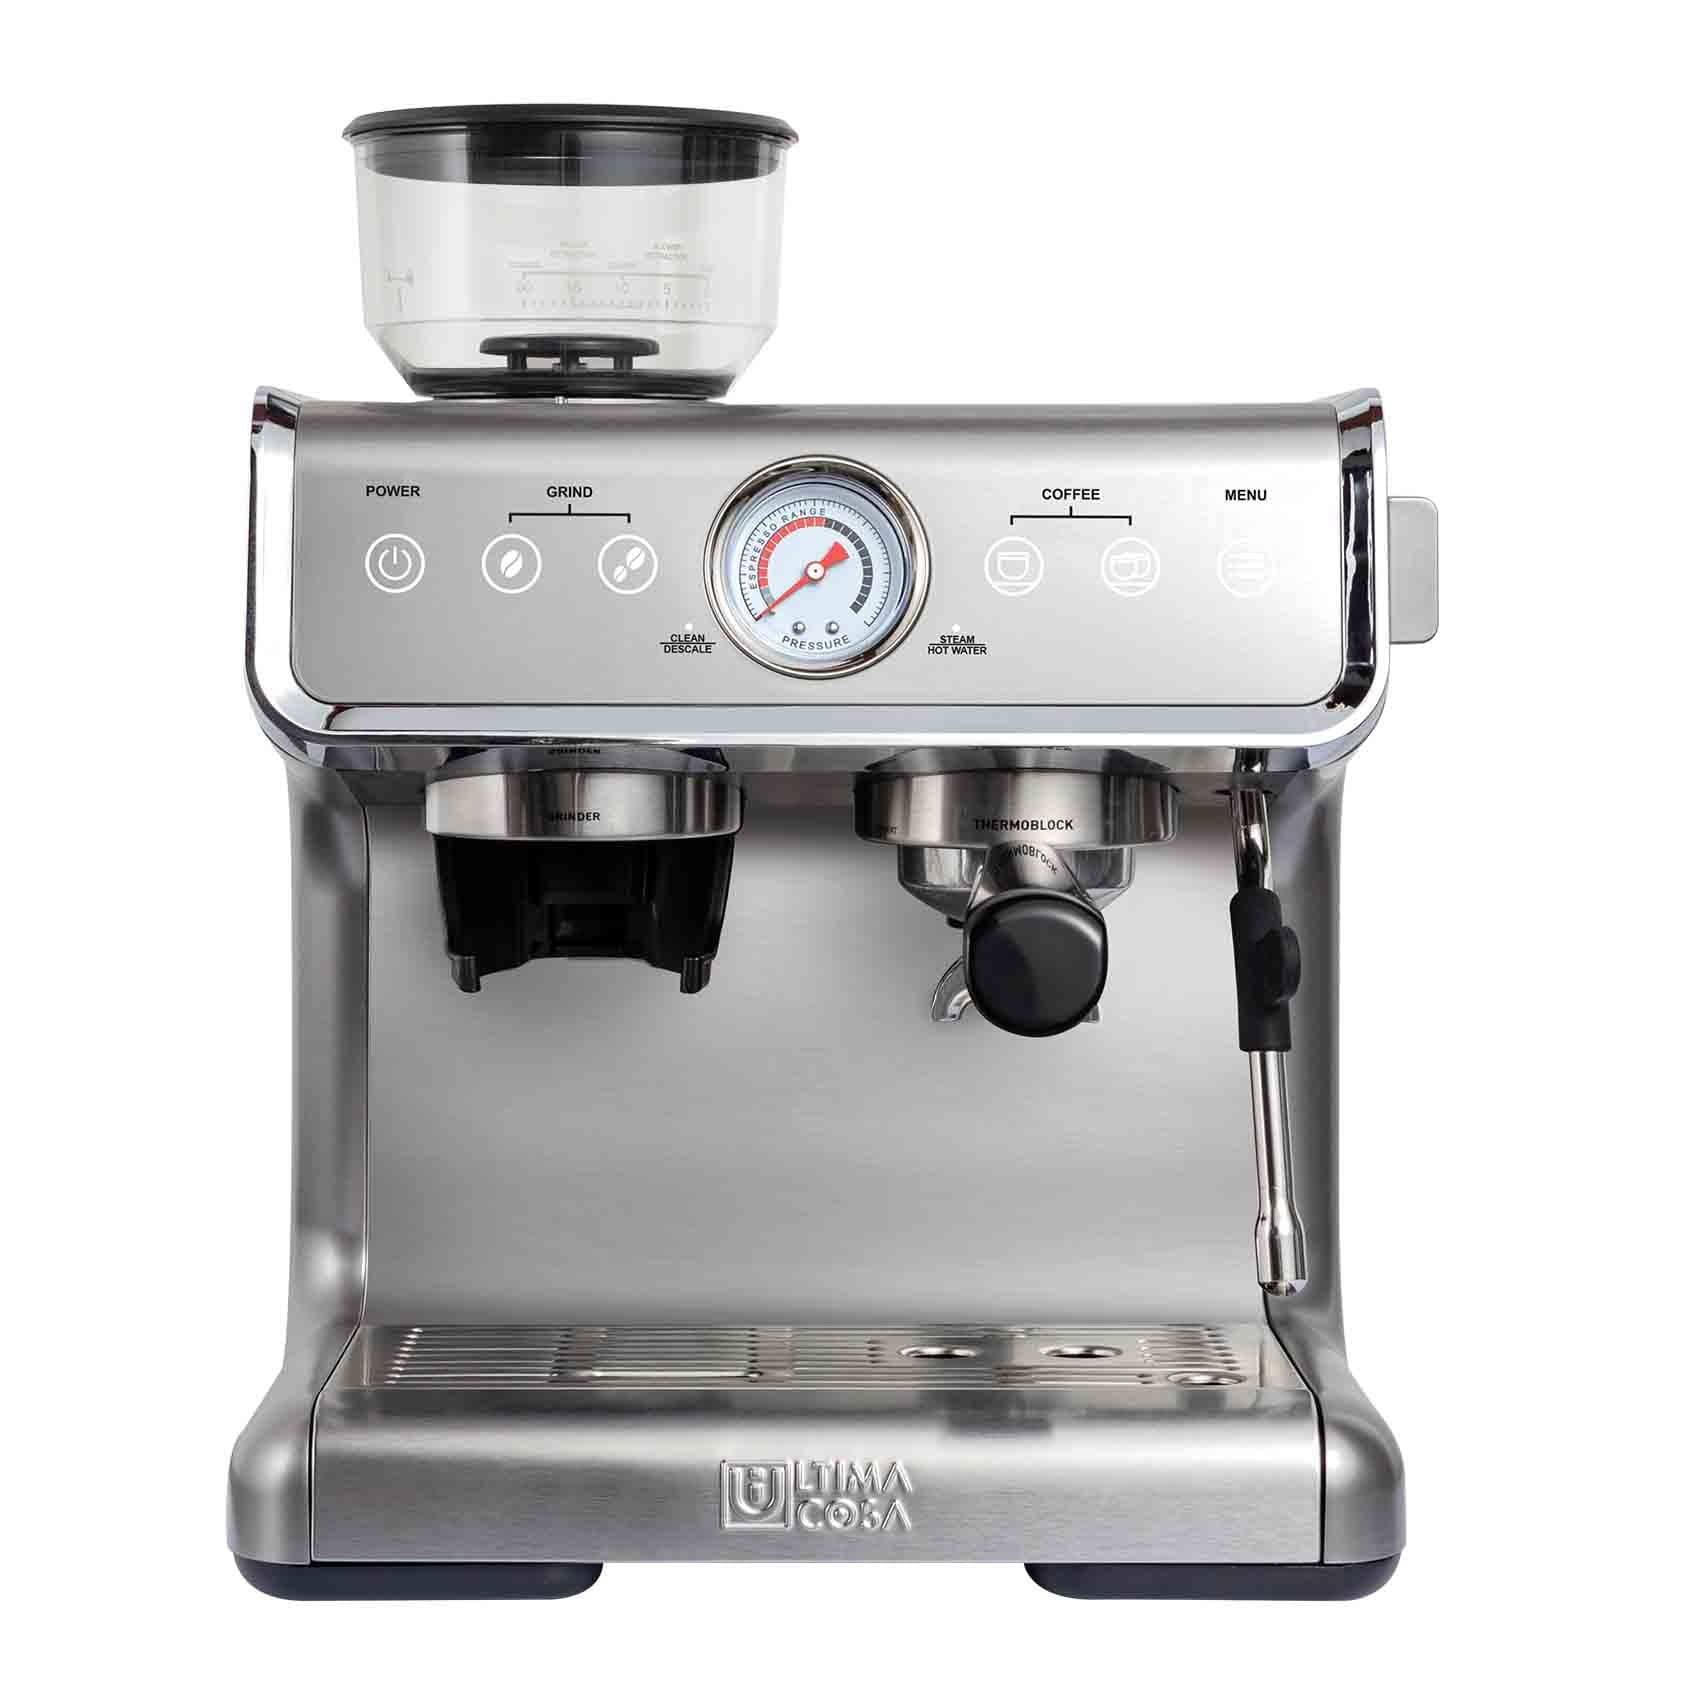 Ultima Cosa New Presto Bollente Semi-Automatic Espresso Machine - Silver - 2 Litre Water Tank | Walmart (US)